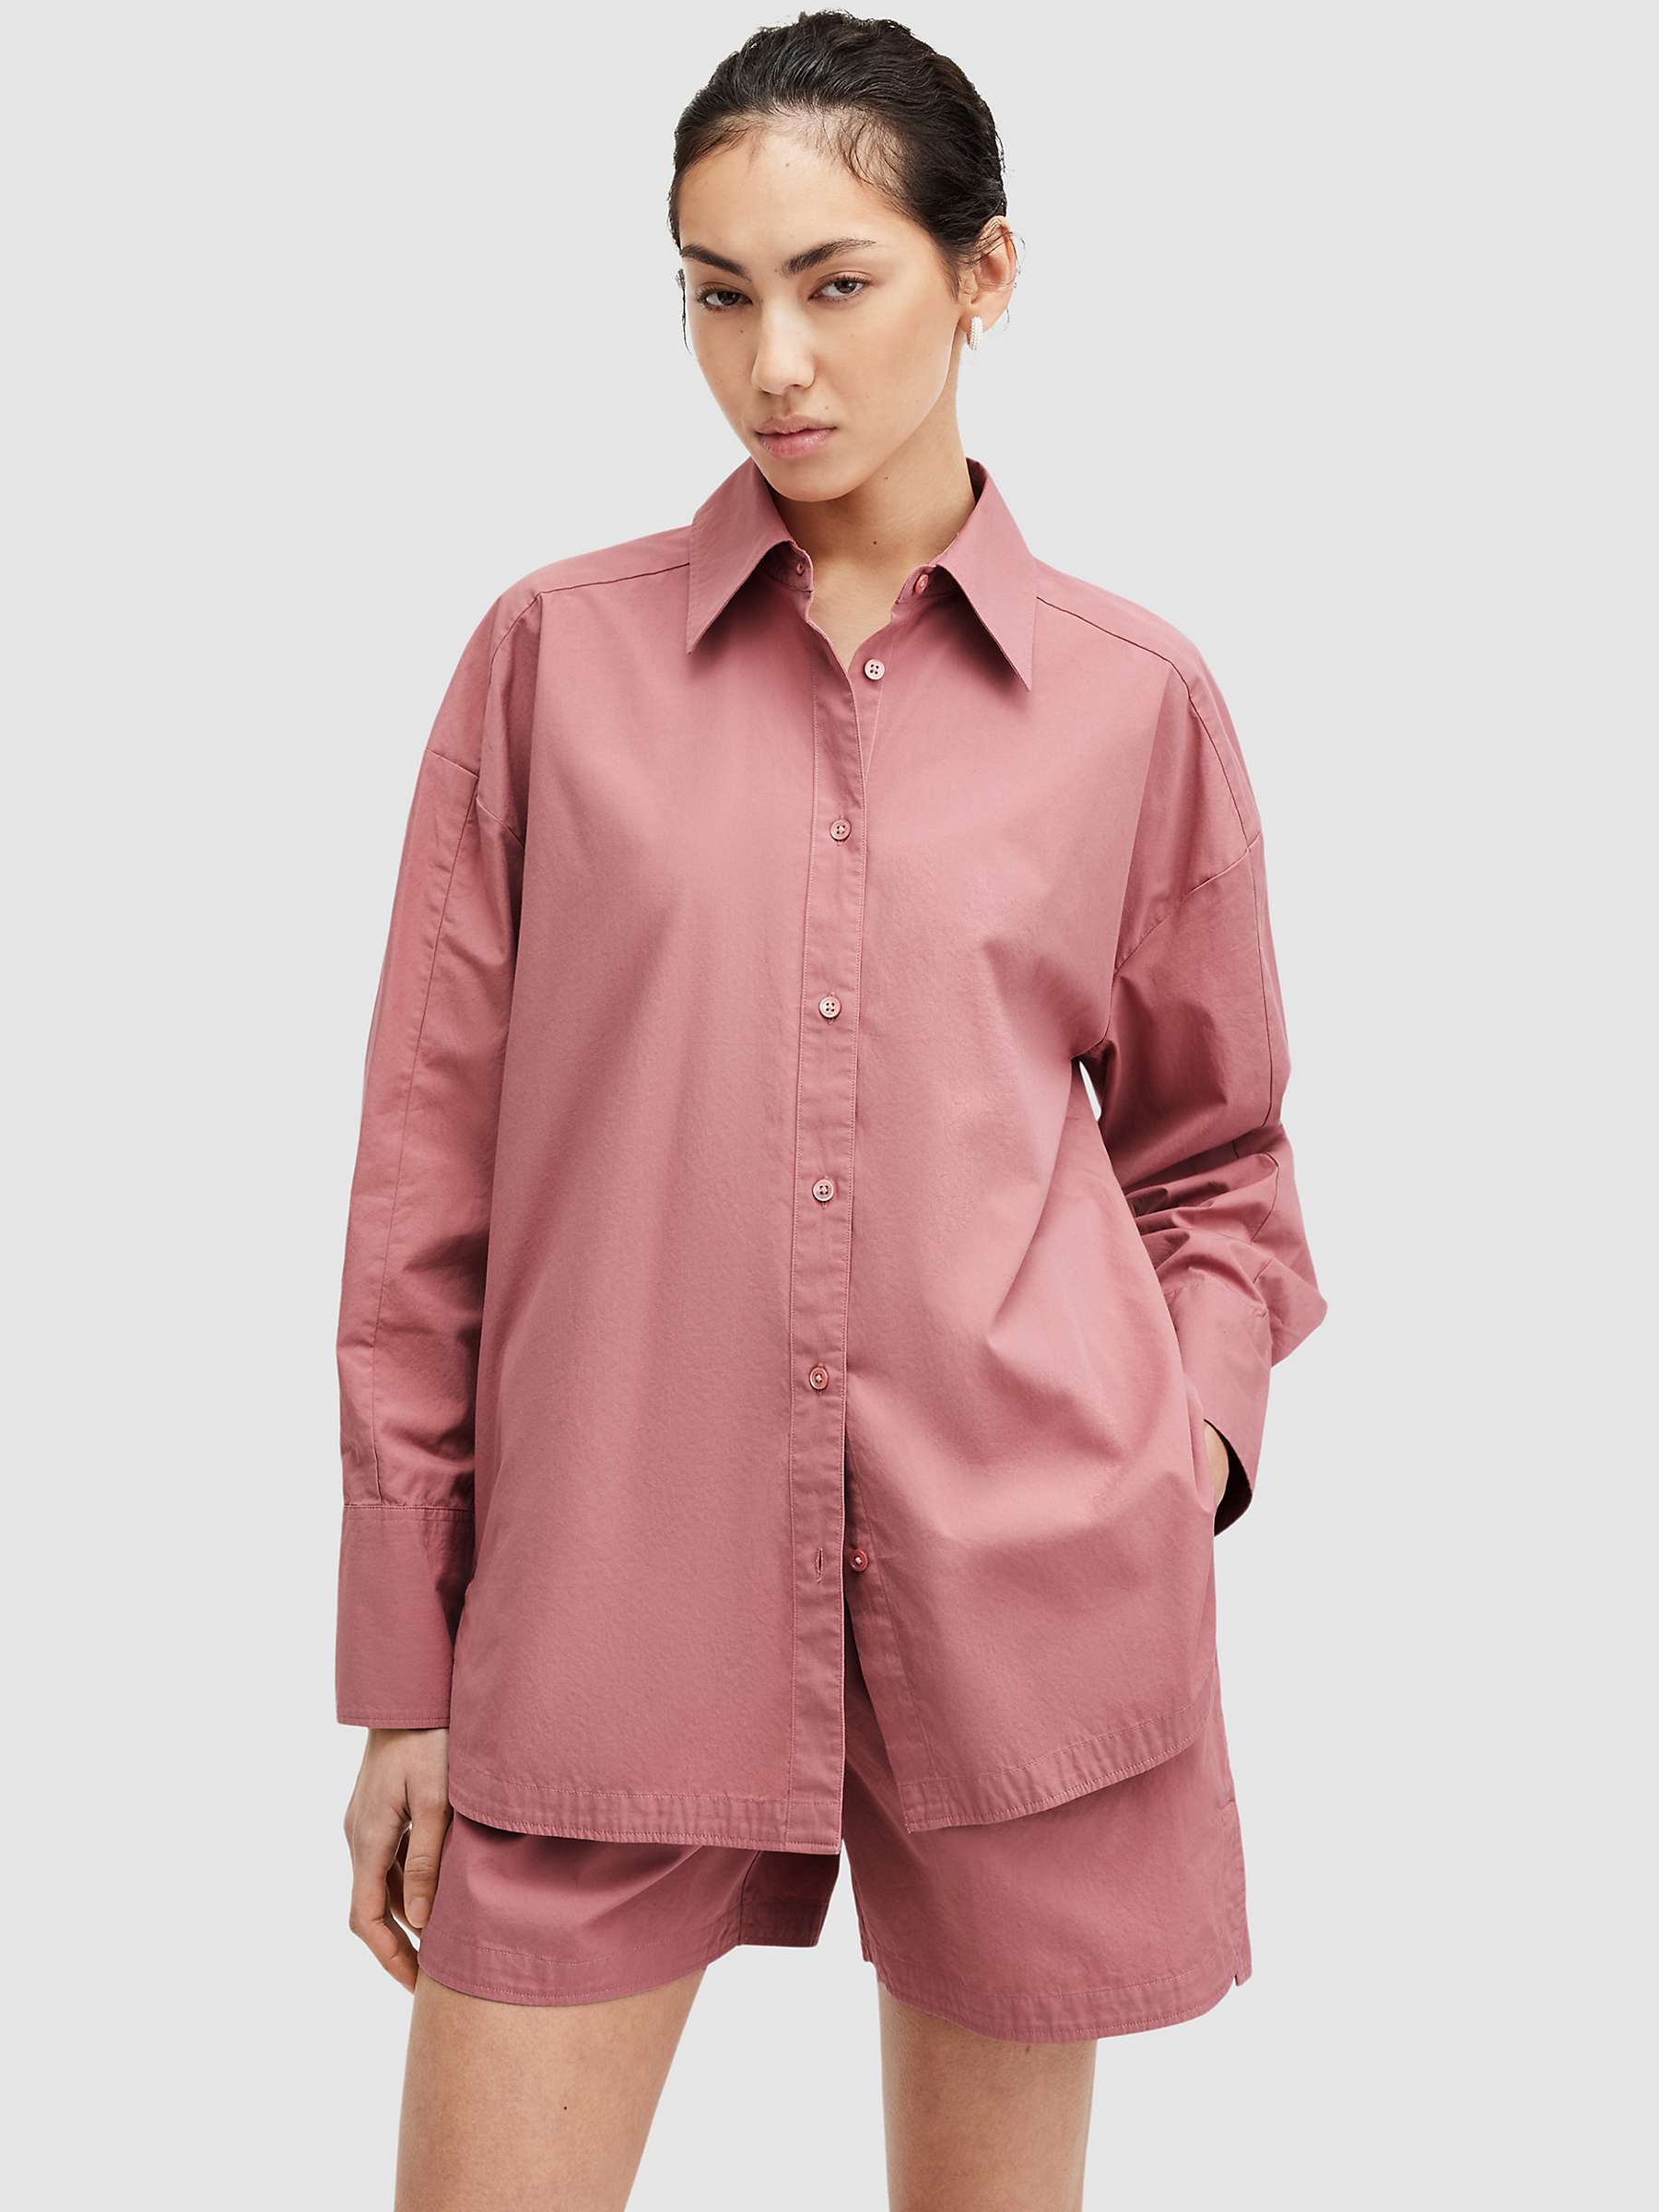 Buy AllSaints Karina Organic Cotton Shirt, Ash Rose Pink Online at johnlewis.com